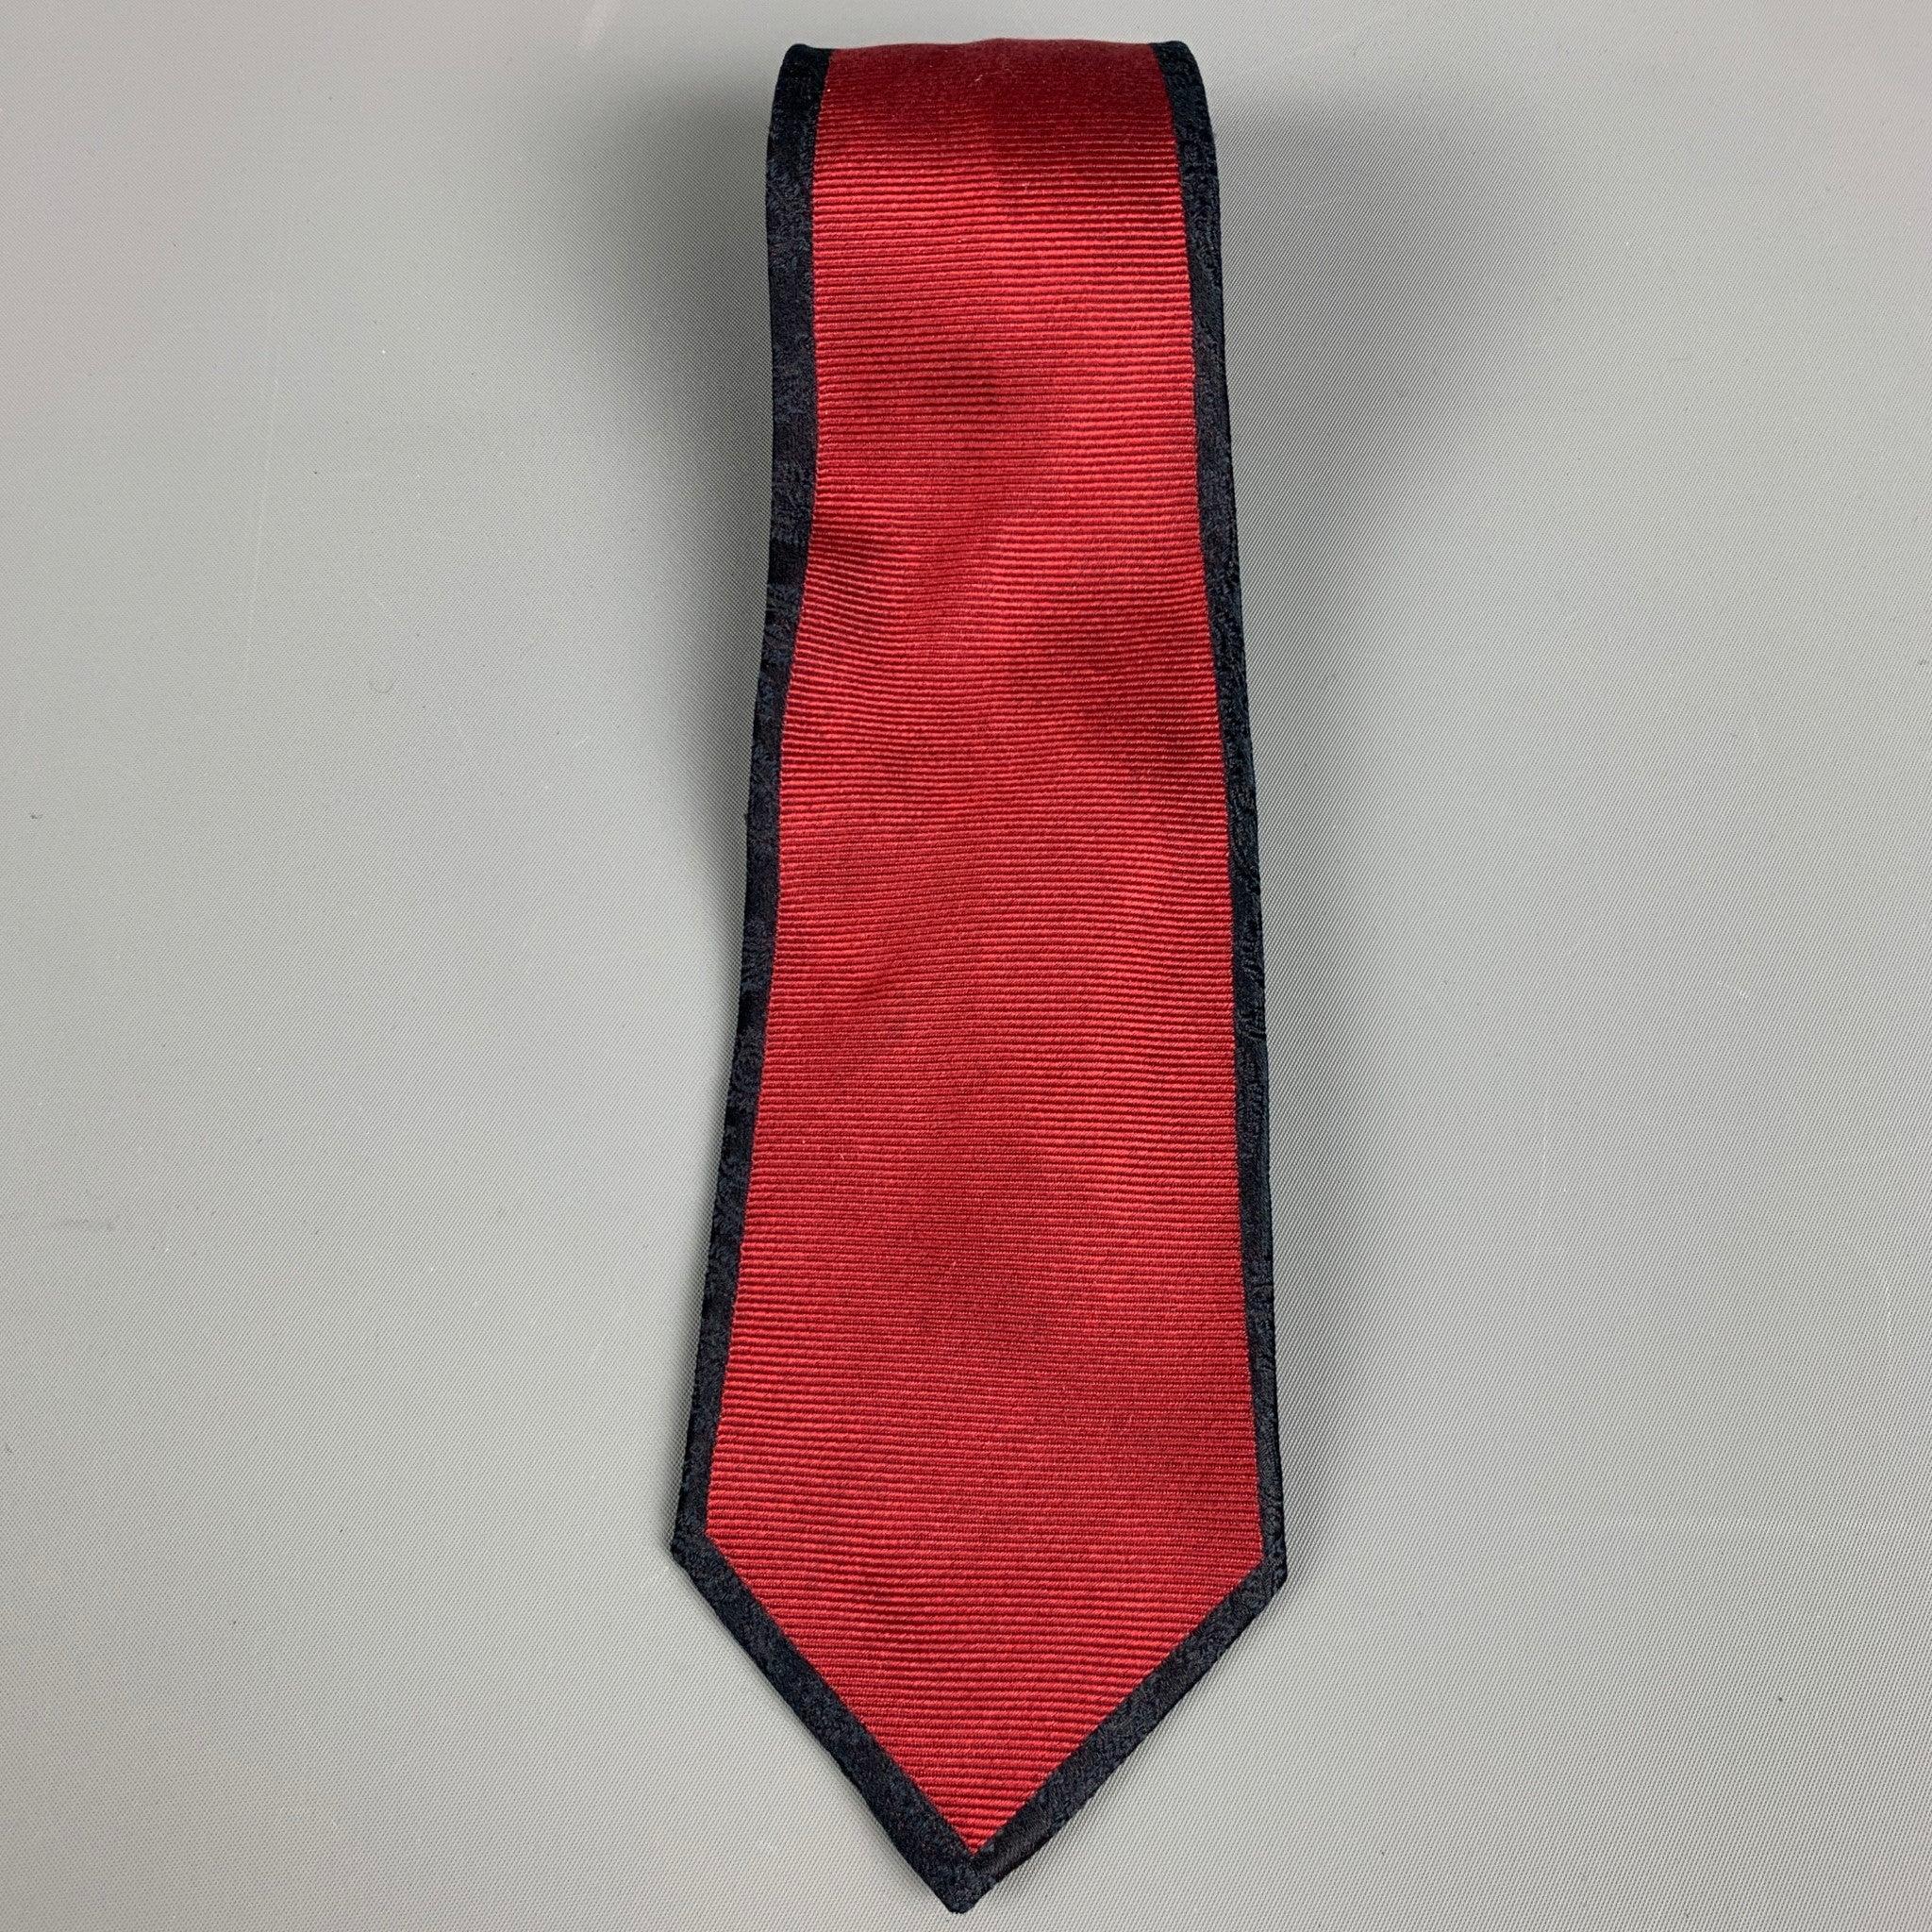 MILA SCHON
Cravate en soie avec un centre en jacquard rouge et des bords en motif cachemire noir. Fabriqué en Italie. Excellent état. 

Mesures : 
  Largeur : 3 pouces Longueur : 57 pouces 
  
  
 
Référence : 127997
Catégorie : Cravate
Plus de